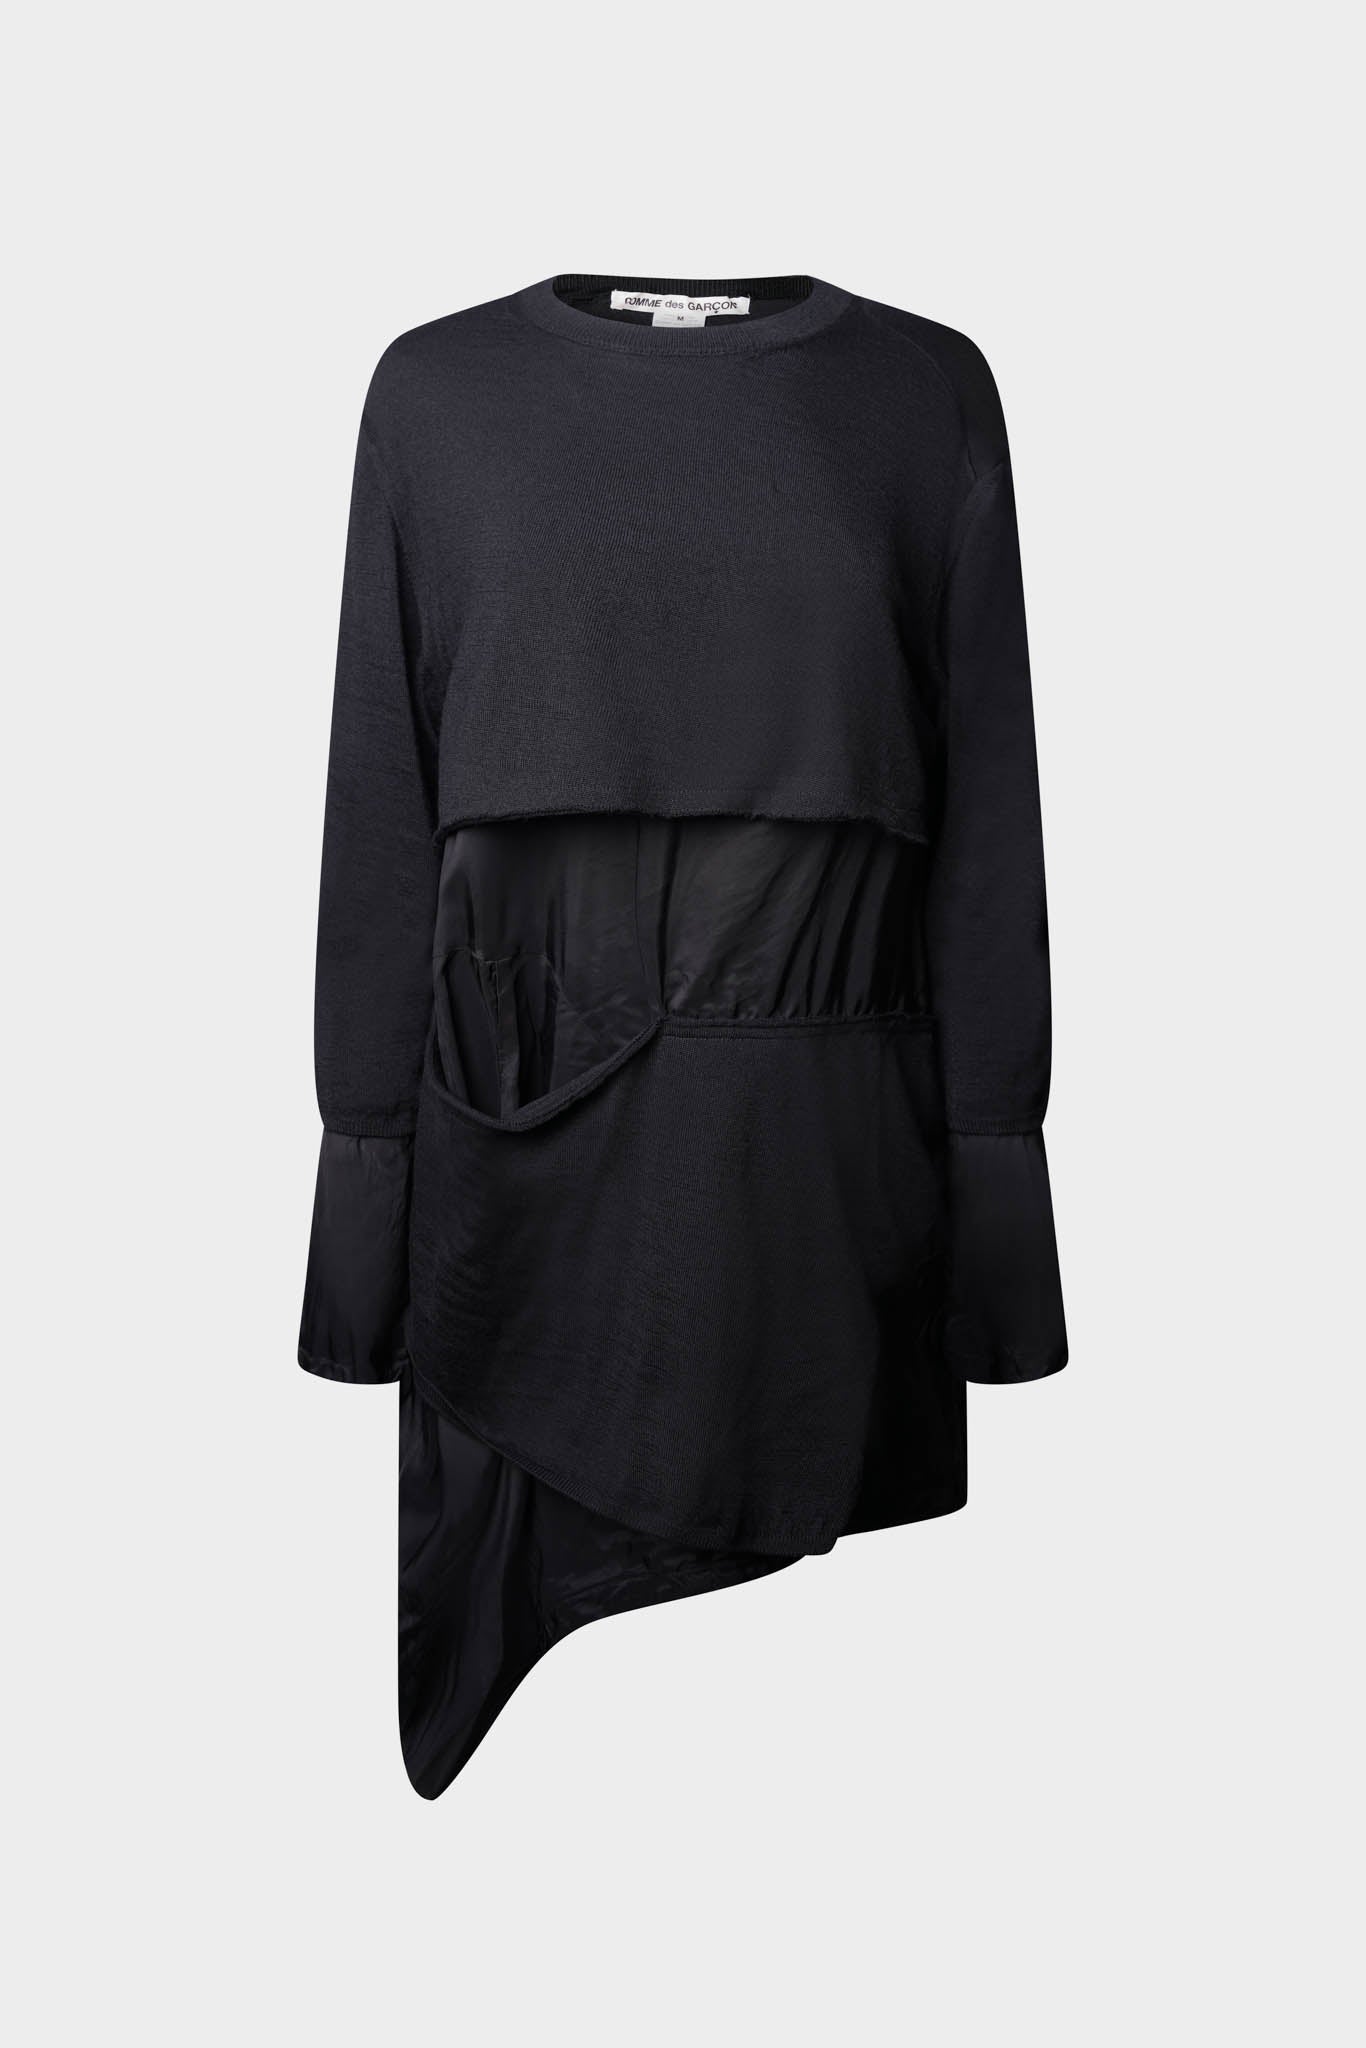 Selectshop FRAME - COMME DES GARÇONS Sweater Outerwear Dubai